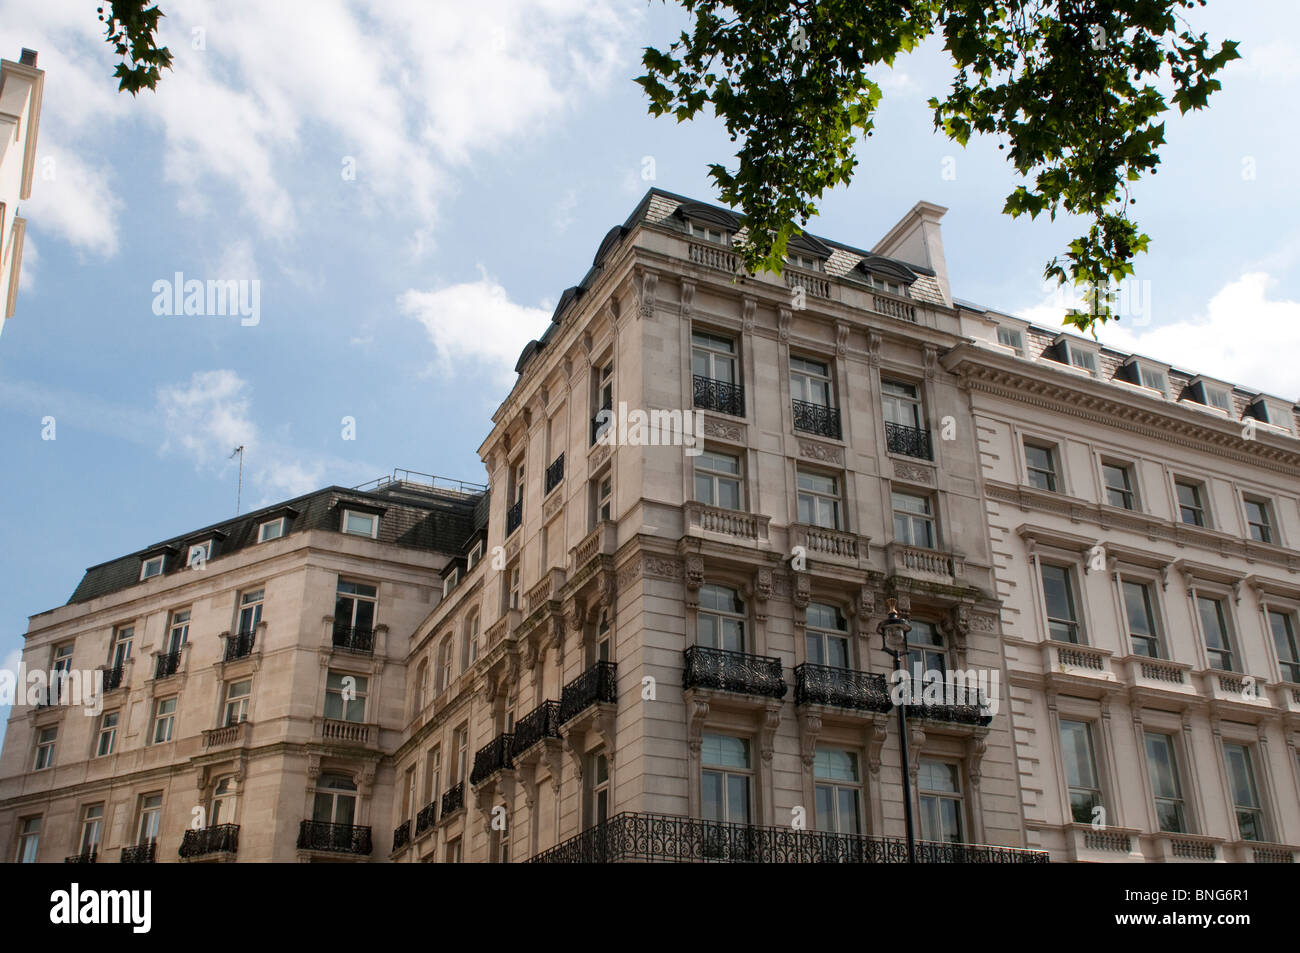 Houses on Buckingham Palace Road, London, UK Stock Photo